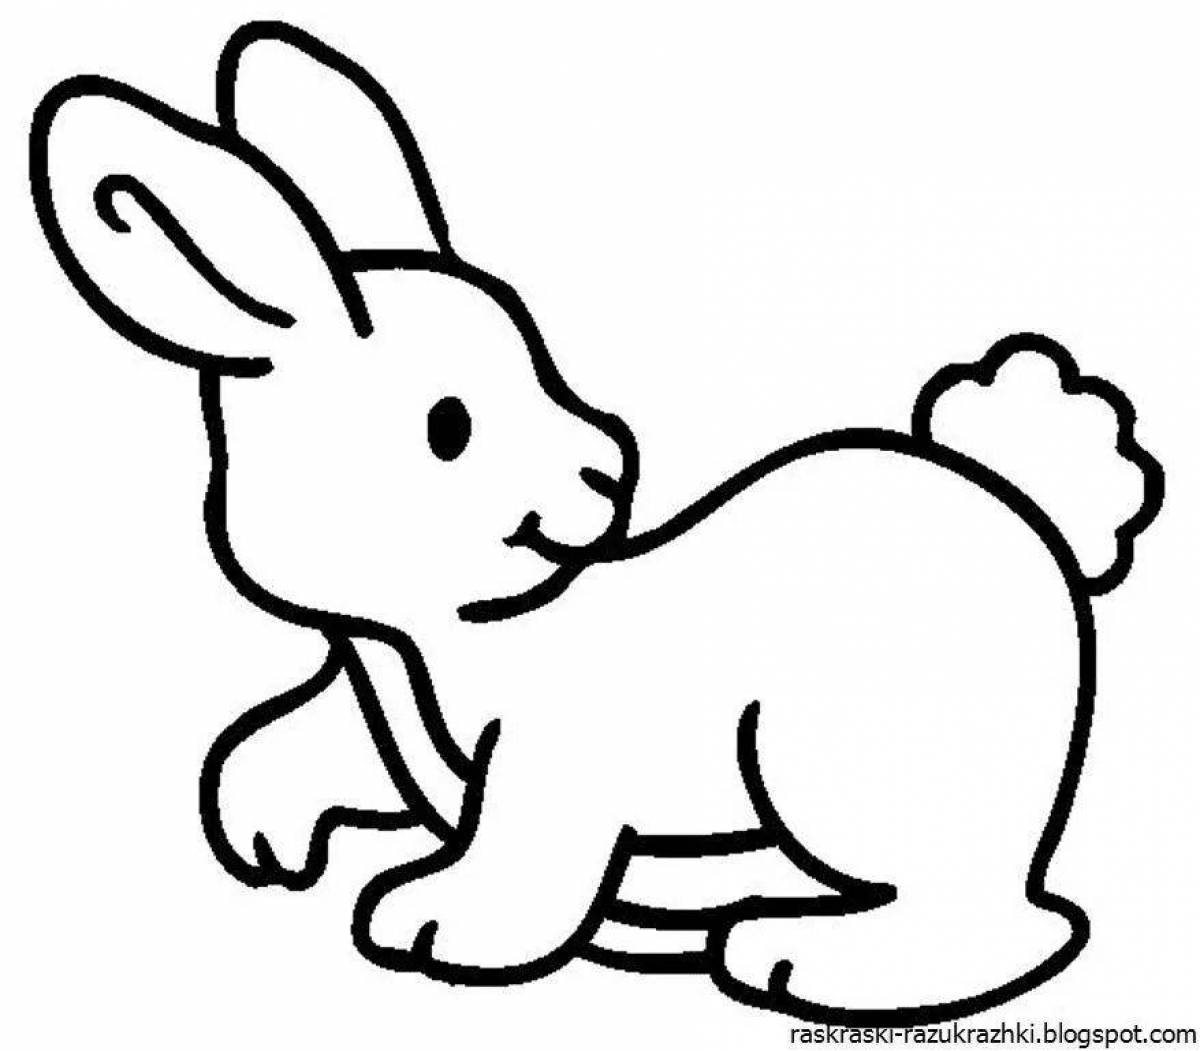 Очаровательная раскраска кролик для детей